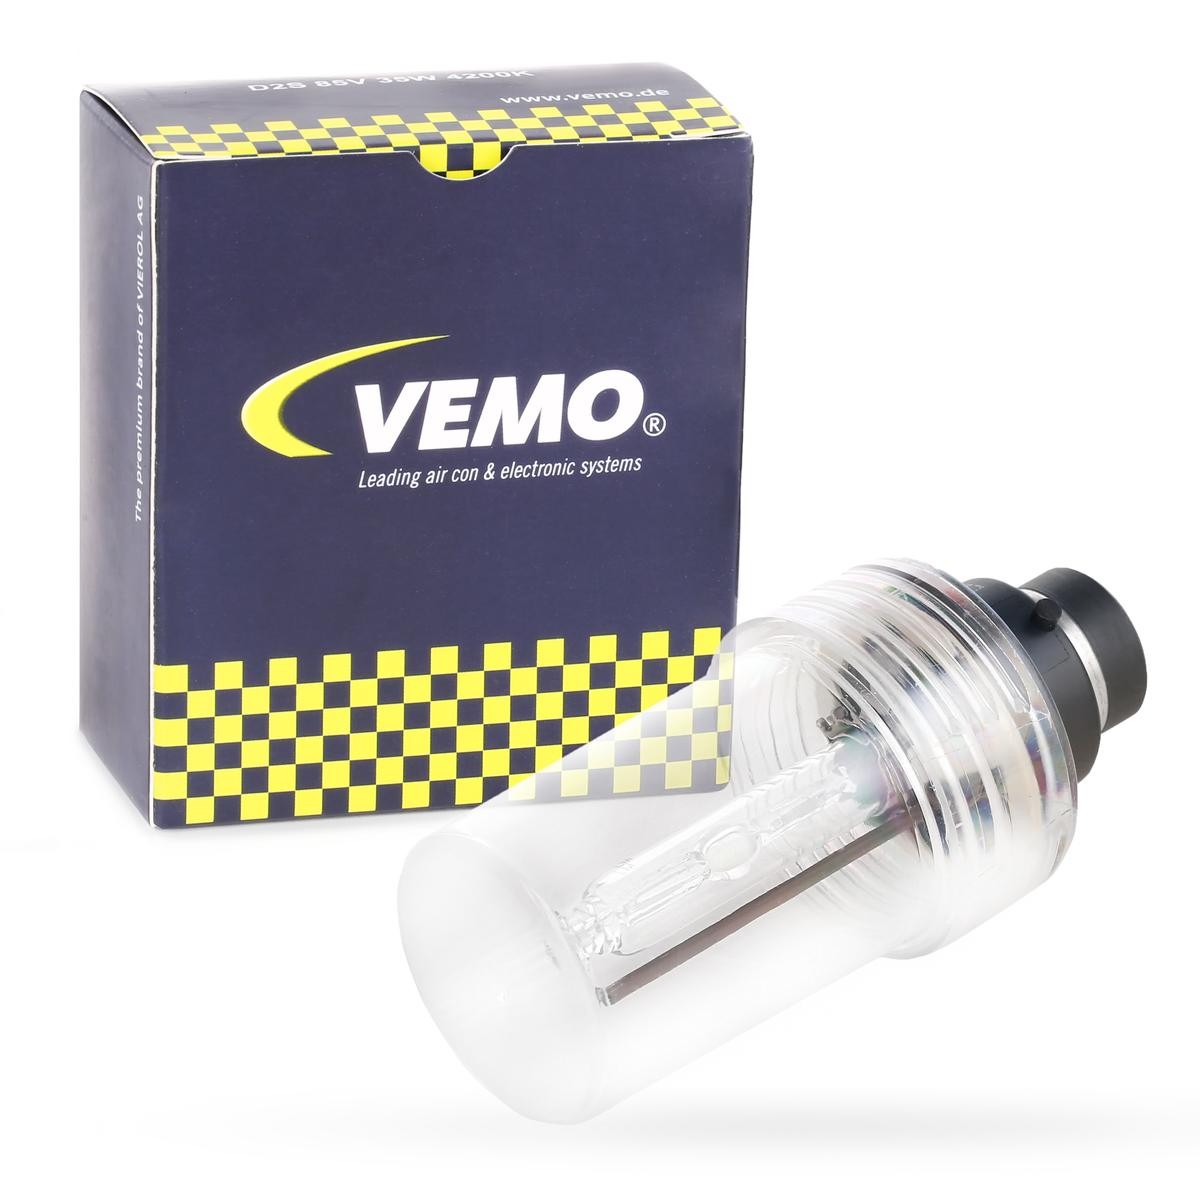 D2S VEMO D2S (Gasentladungslampe) 85V 35W P32d-2 4200K Xenon Original VEMO Qualität Glühlampe, Fernscheinwerfer V99-84-0014 günstig kaufen